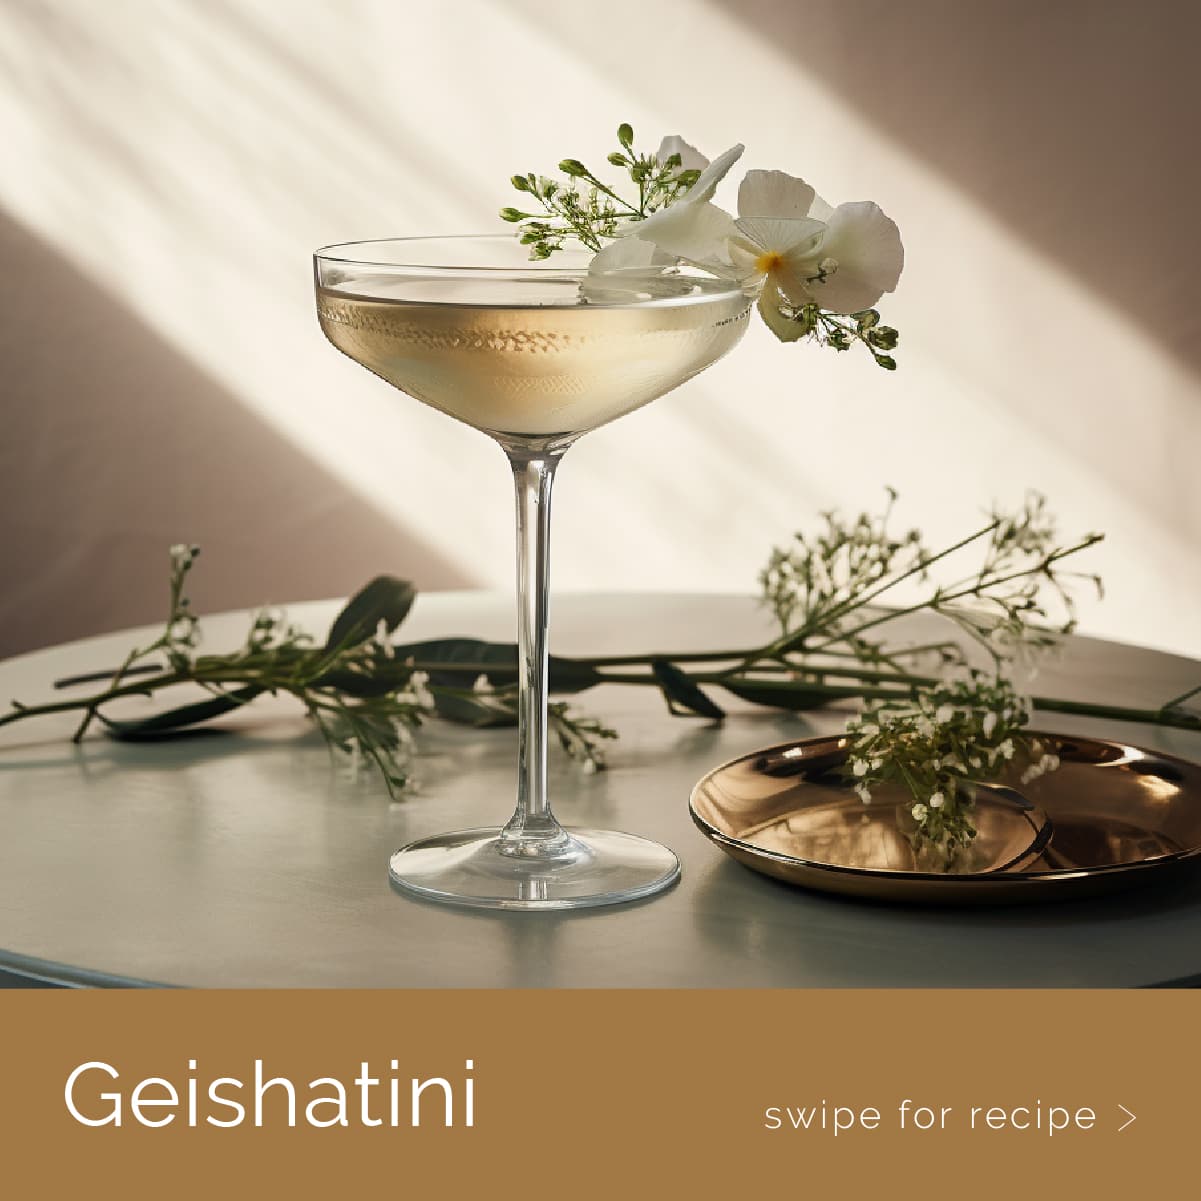 A Geishatini cocktail